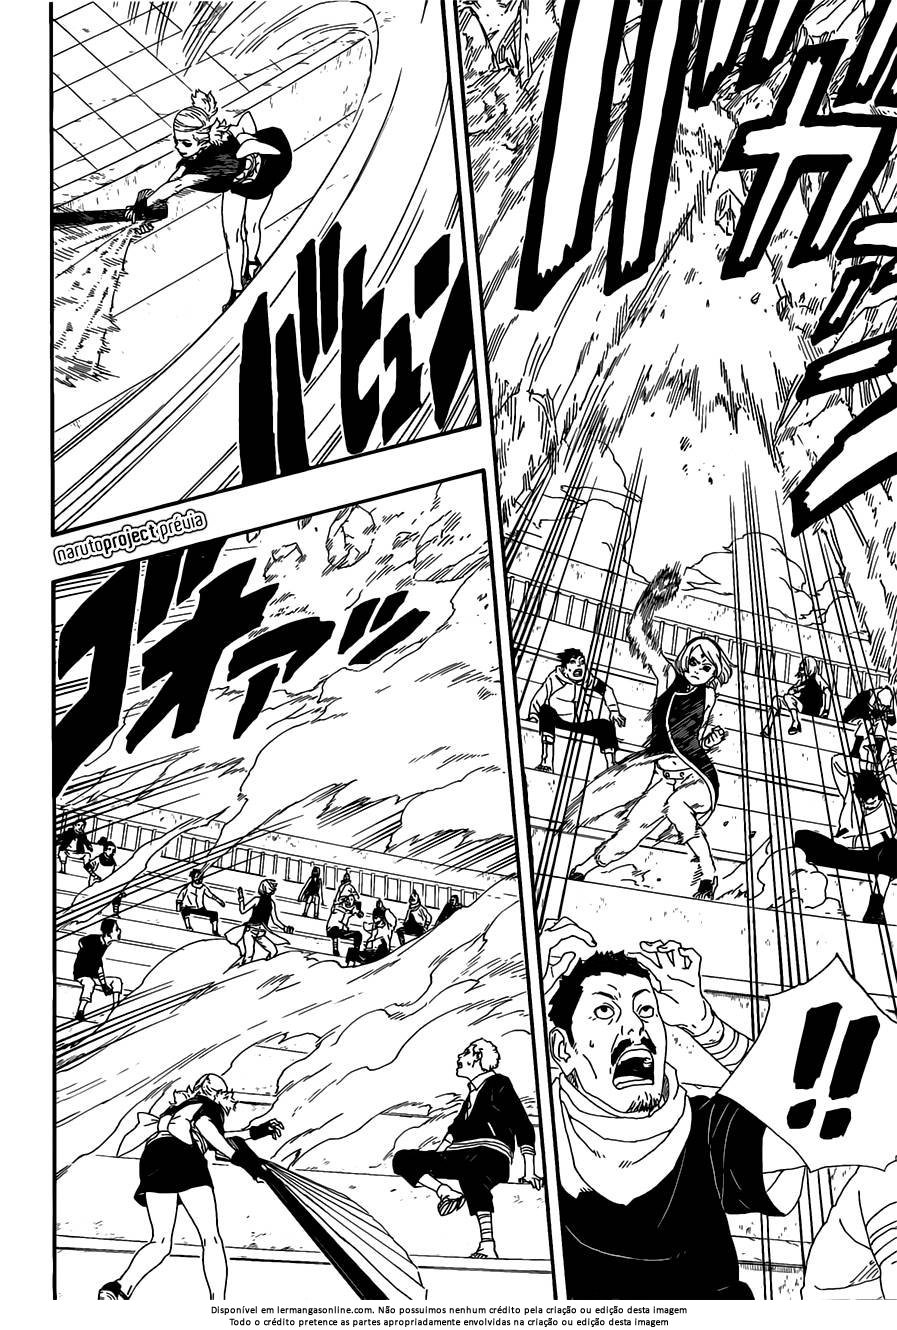 Pakura e mei terumi vs hashirama. - Página 8 Sakura11